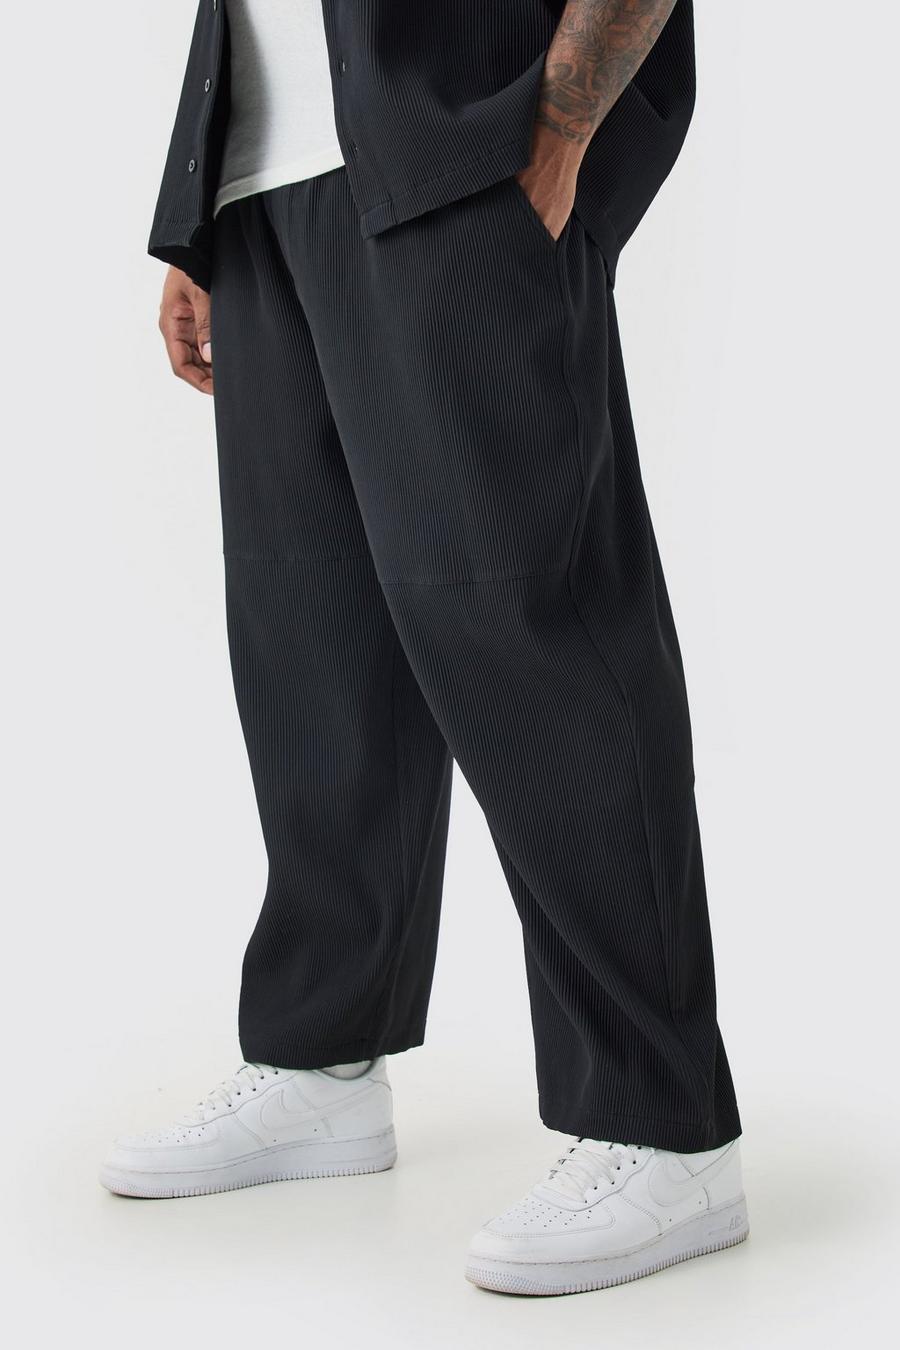 Pantalón Plus plisado estilo skate con cintura elástica, Black